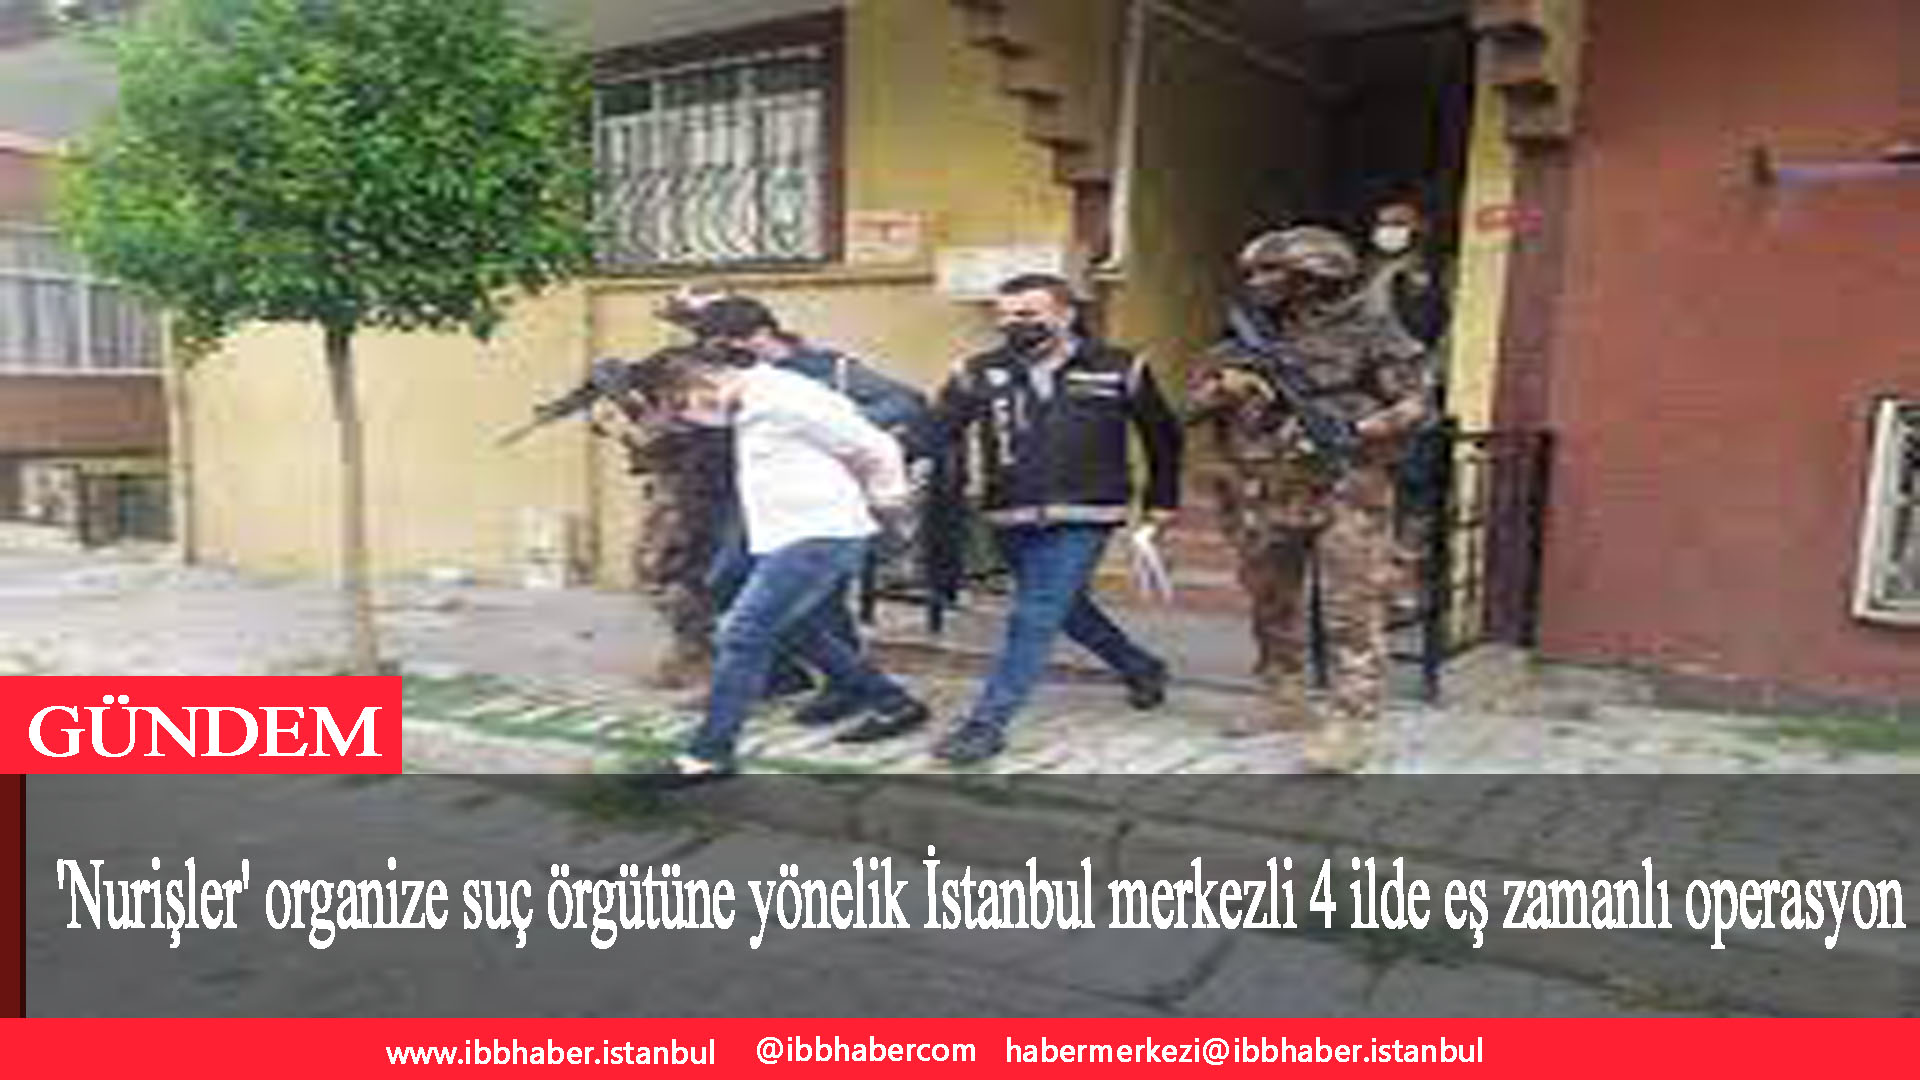 ‘Nurişler’ organize suç örgütüne yönelik İstanbul merkezli 4 ilde eş zamanlı operasyon